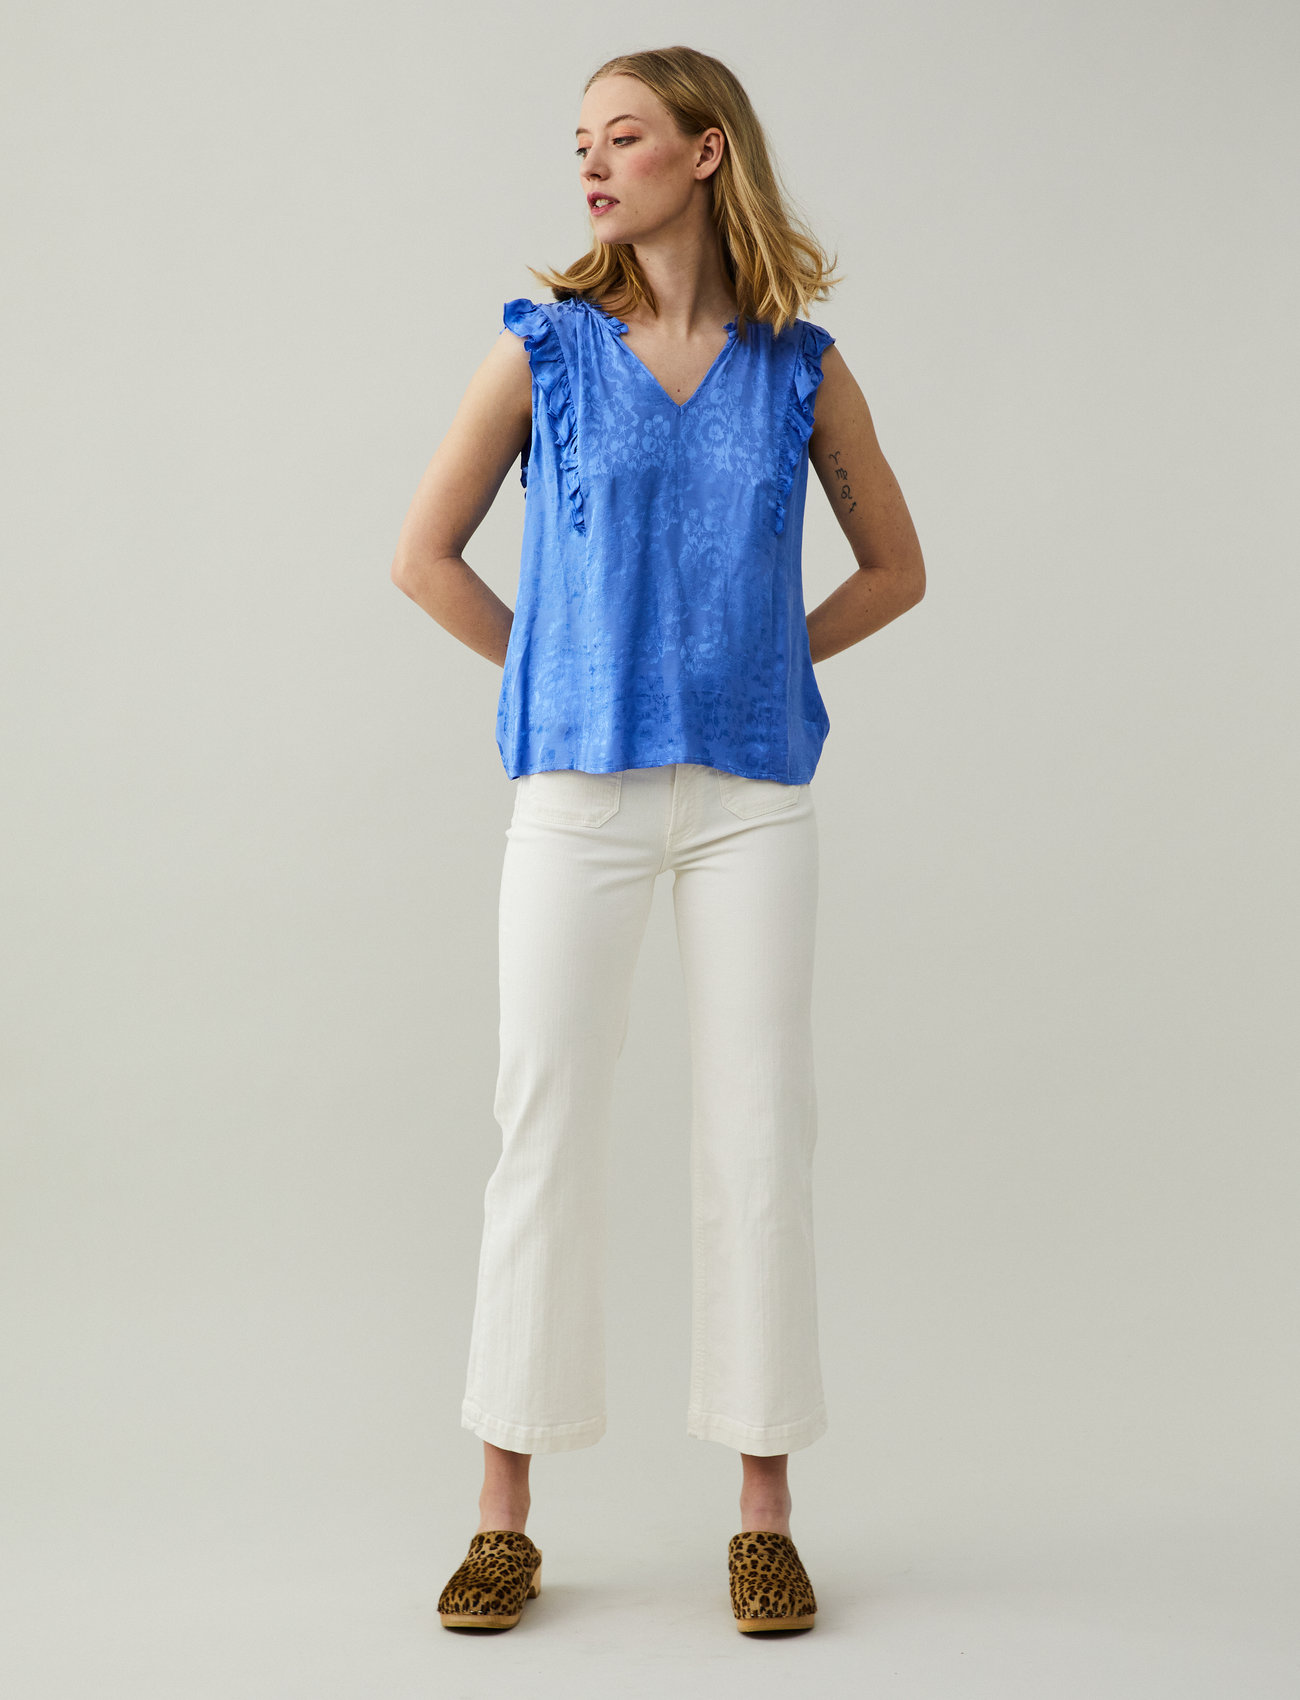 ODD MOLLY - Samira Blouse - short-sleeved blouses - cornflower blue - 0